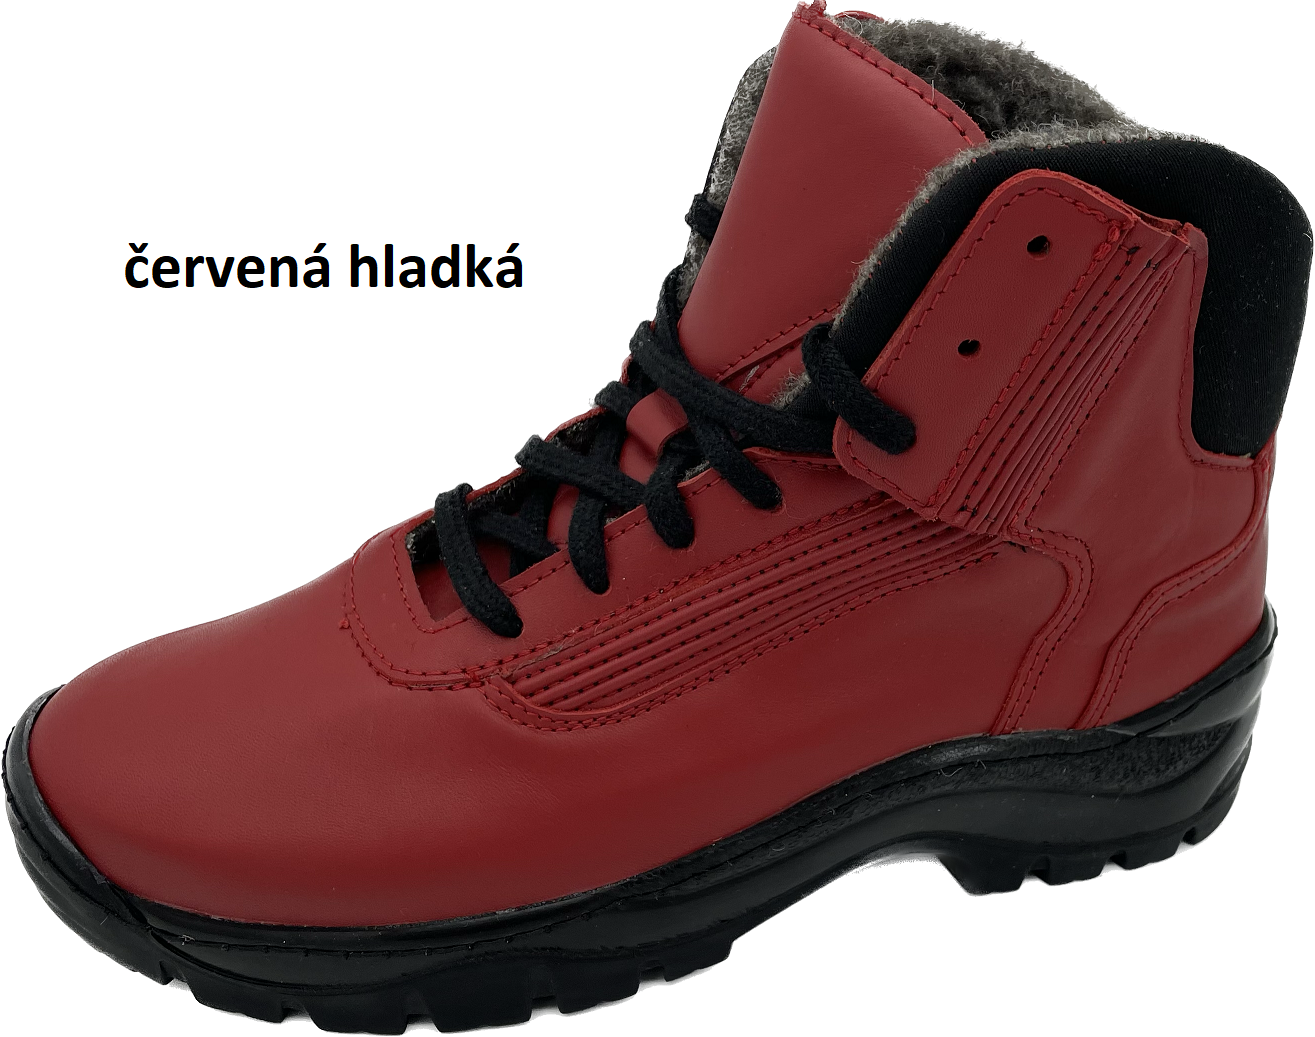 Boty Hanák TREKING Barva usně: červená hladká, Velikosti obuvi: 45